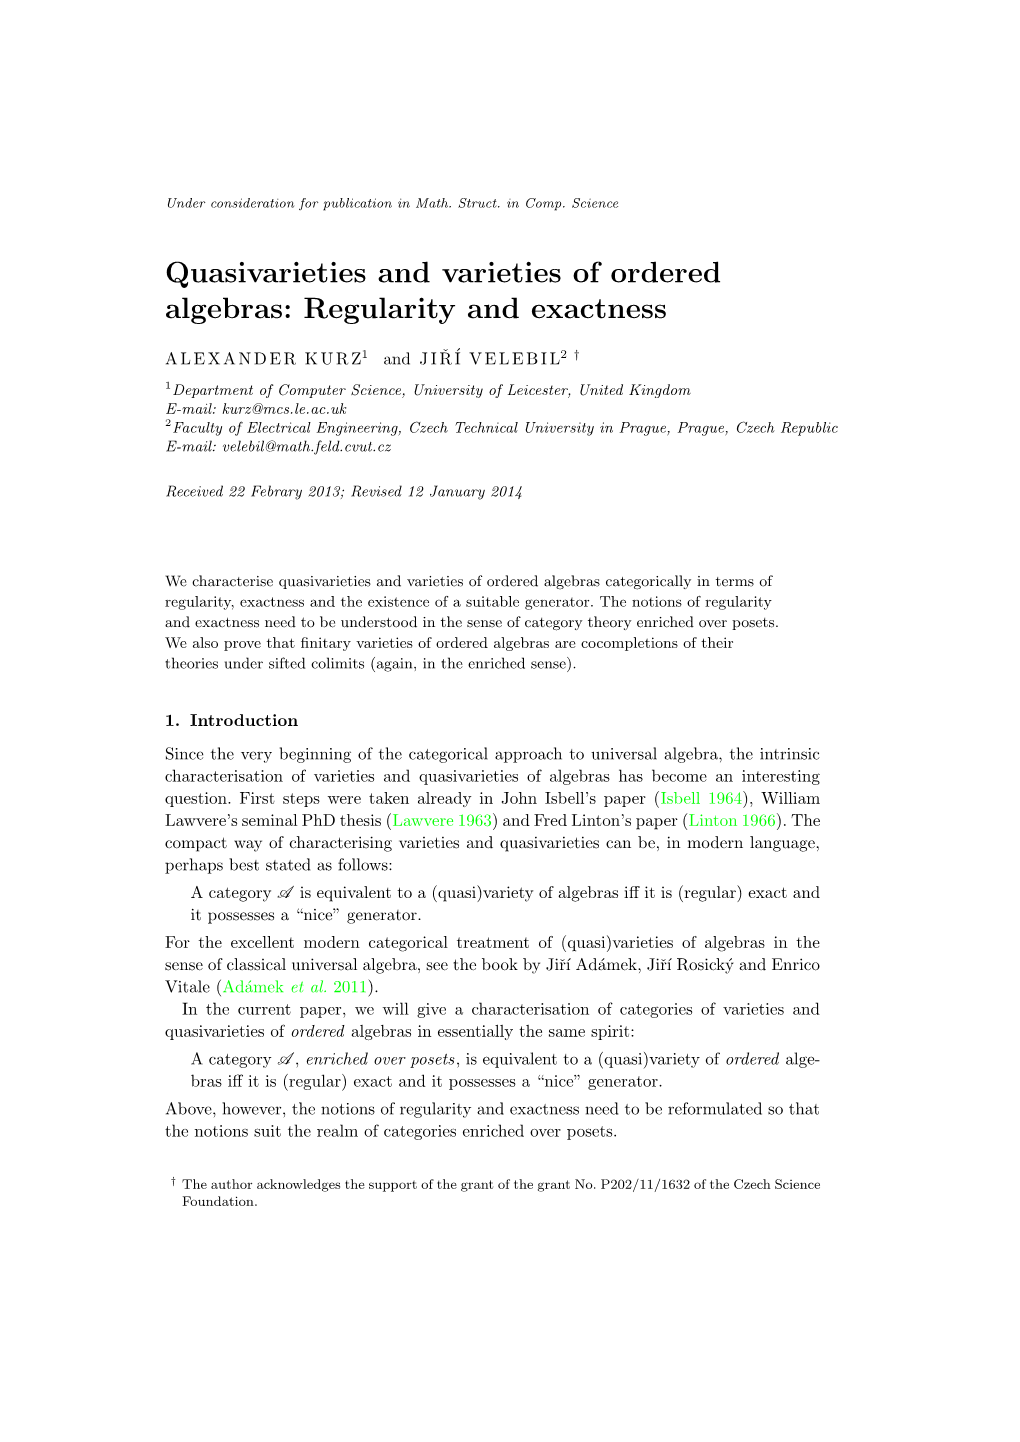 Quasivarieties and Varieties of Ordered Algebras: Regularity and Exactness